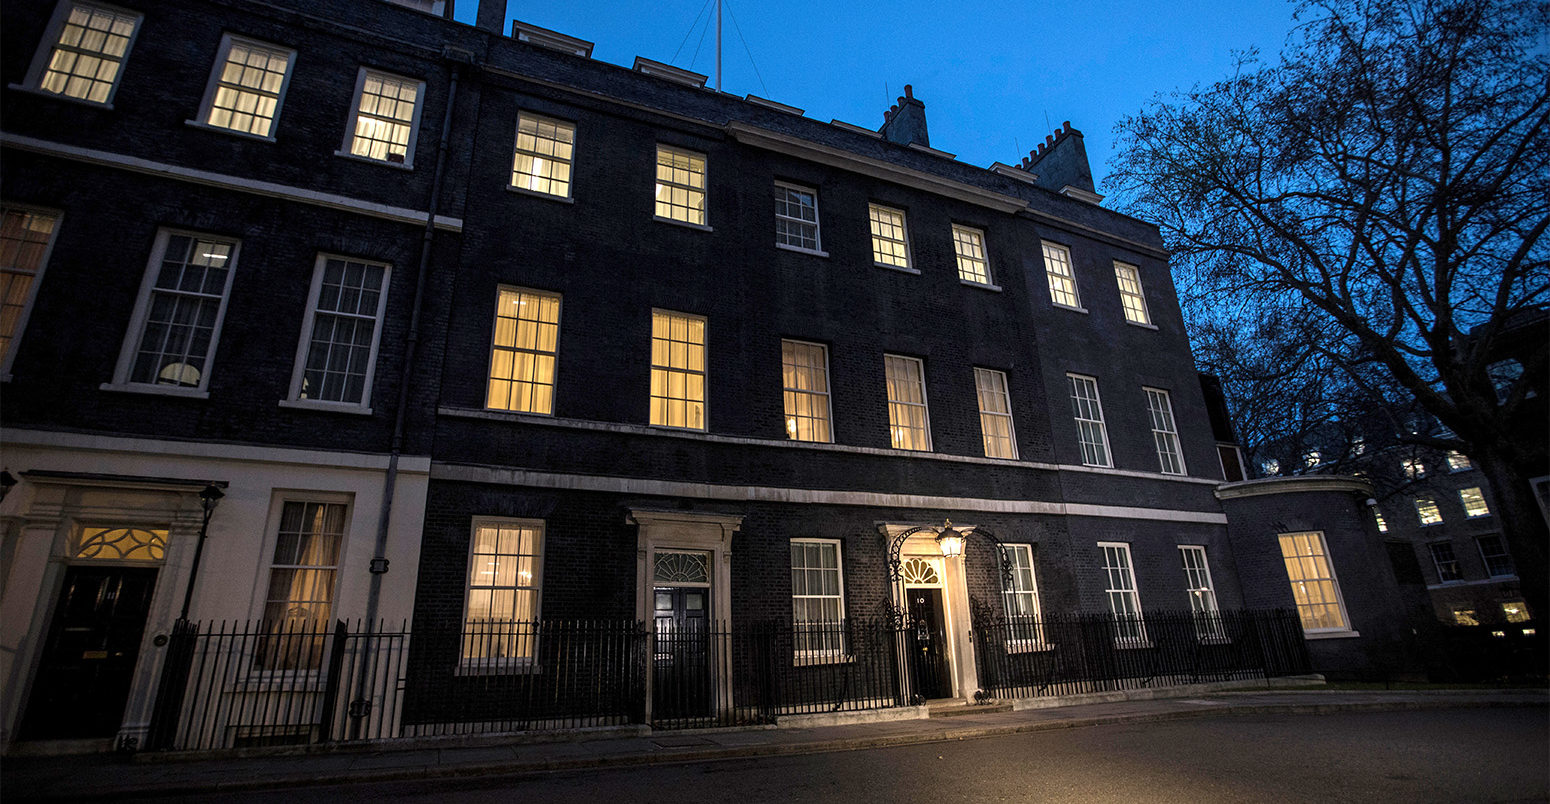 No.10 Downing Street at night, London, UK. Credit: Jeff Gilbert / Alamy Stock Photo.